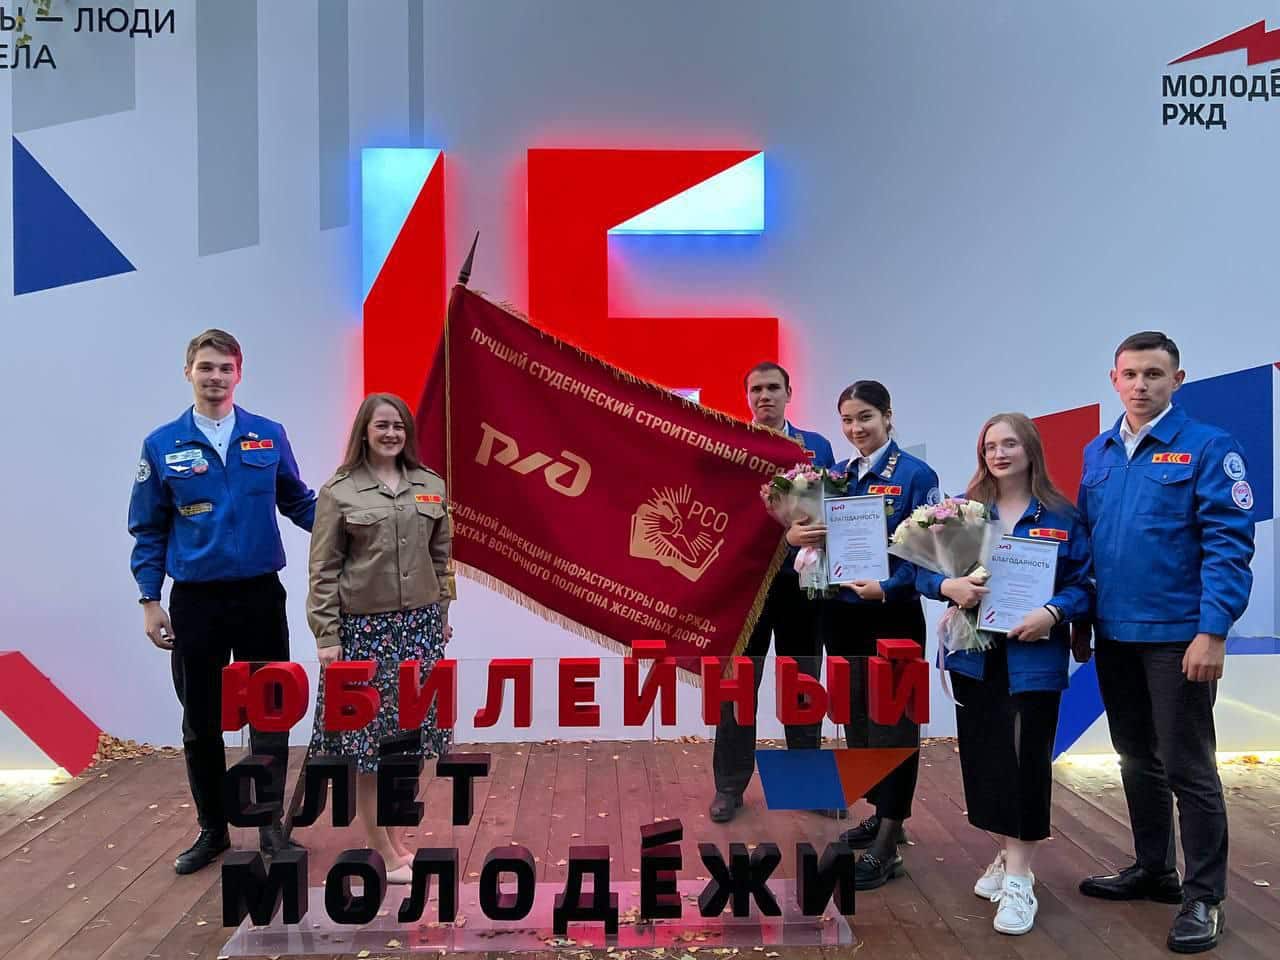 Знамя лучшего на БАМе в руках омского студенческого отряда "Альтаир"